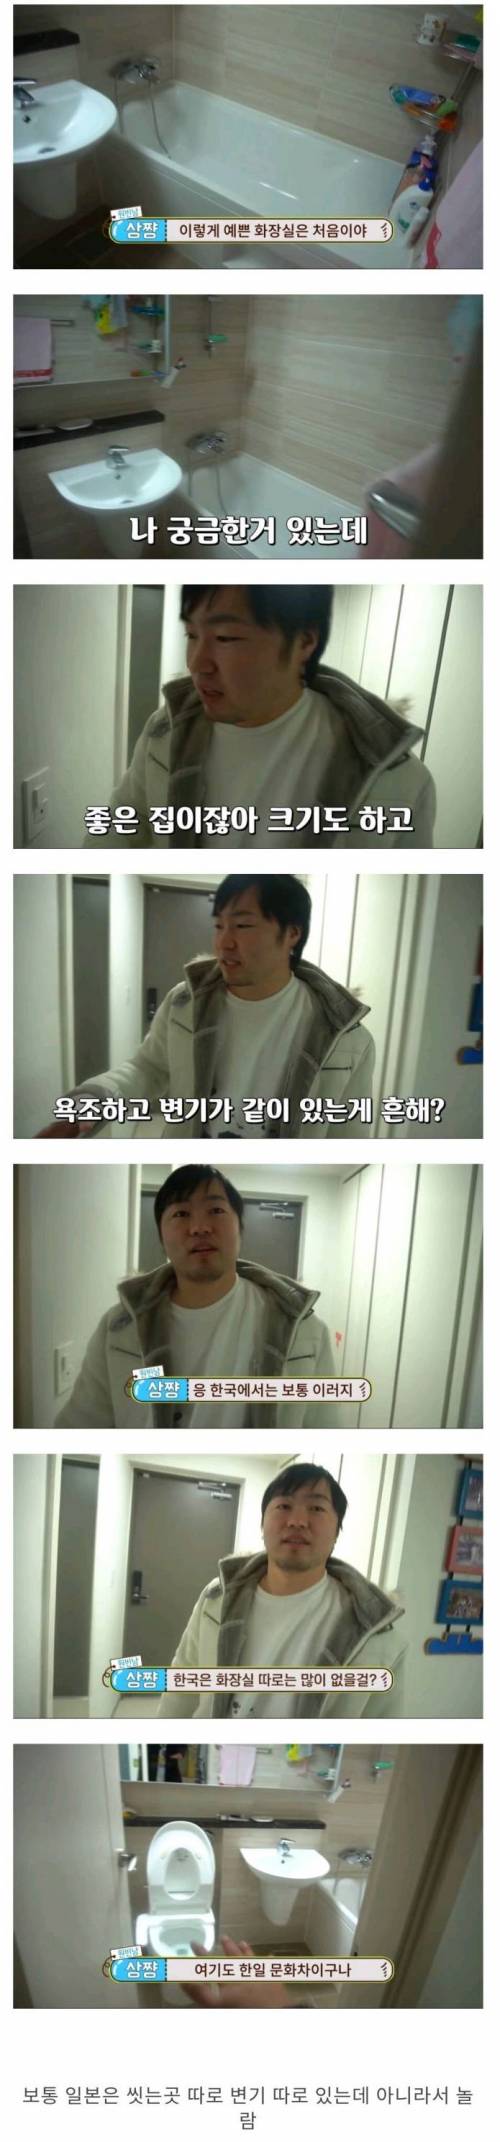 일본 사람이 한국 화장실 보고 놀란 점